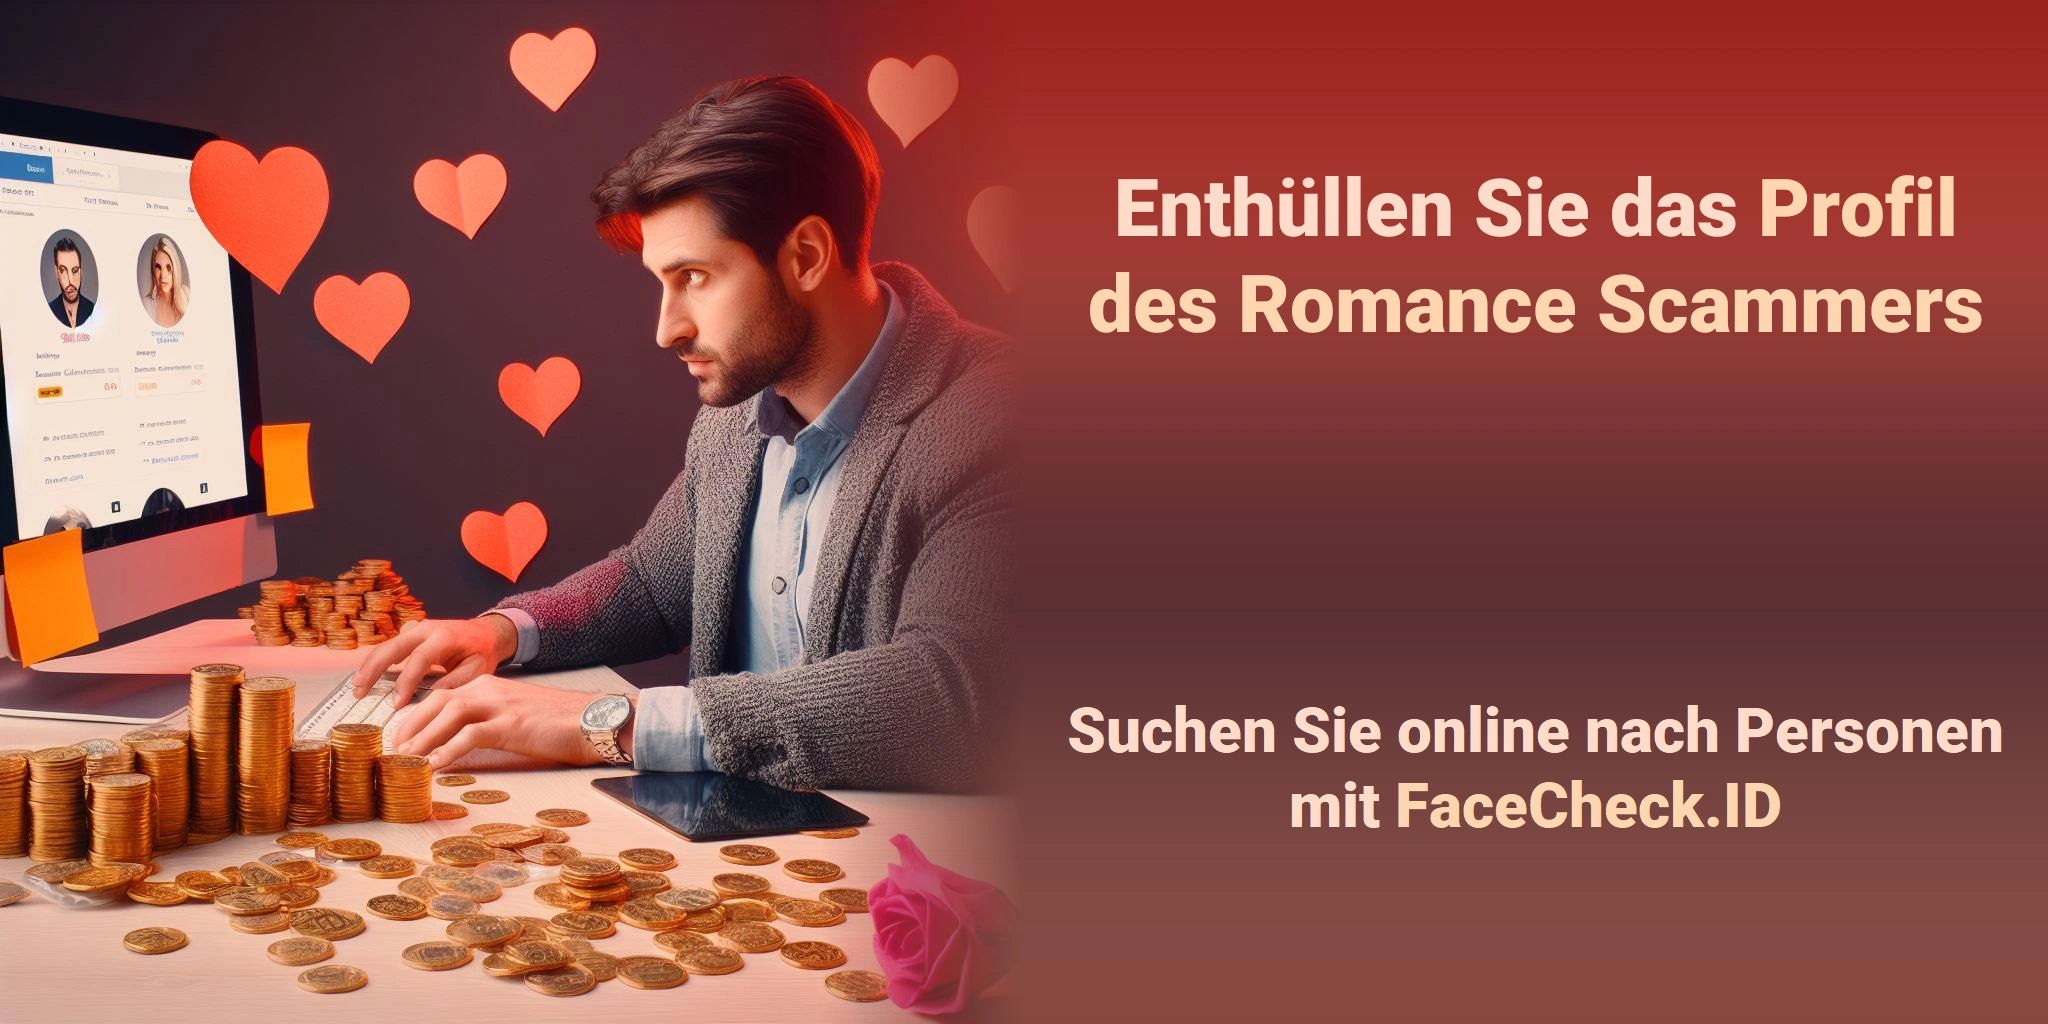 Enthüllen Sie das Profil des Romance Scammers Suchen Sie online nach Personen mit FaceCheck.ID